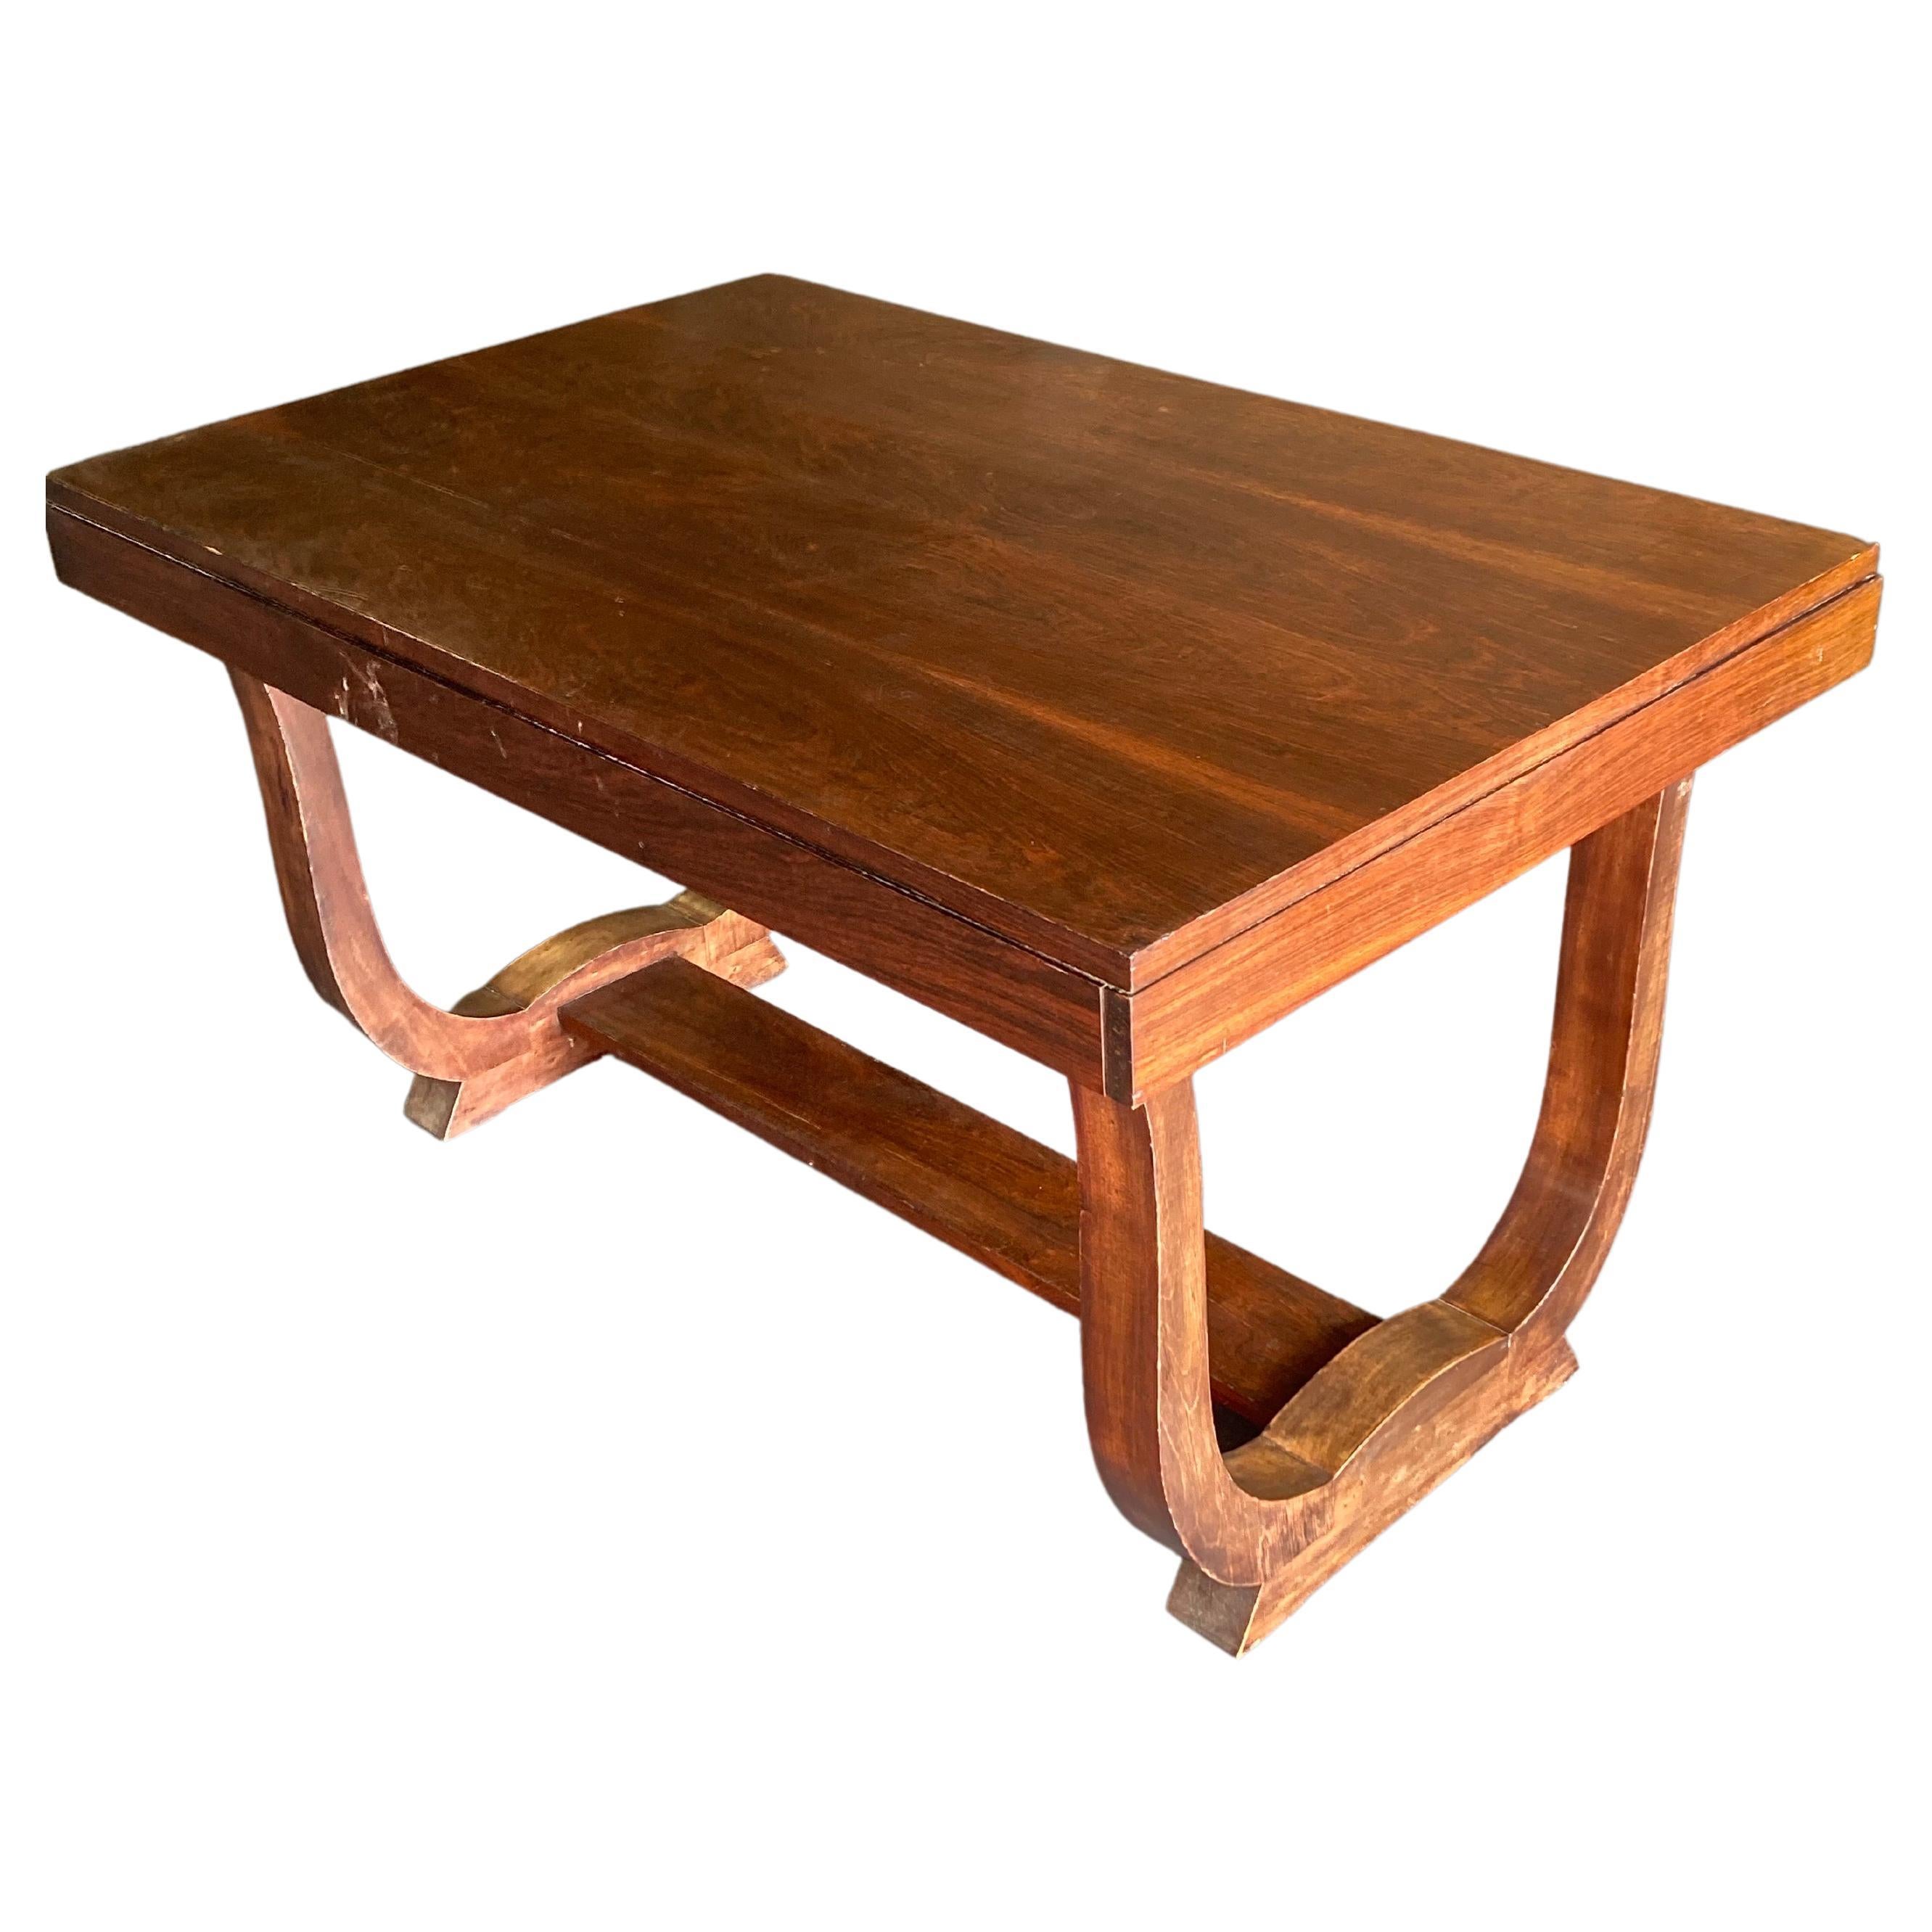 Dieser Tisch wurde von Maison Dominique, Frankreich, um 1930 hergestellt und ist ein vielseitiger Tisch, der als Beistelltisch oder Flurtisch verwendet werden kann.

Andre Domin & Marcel Genevriere gründeten das Unternehmen Maison Dominique und